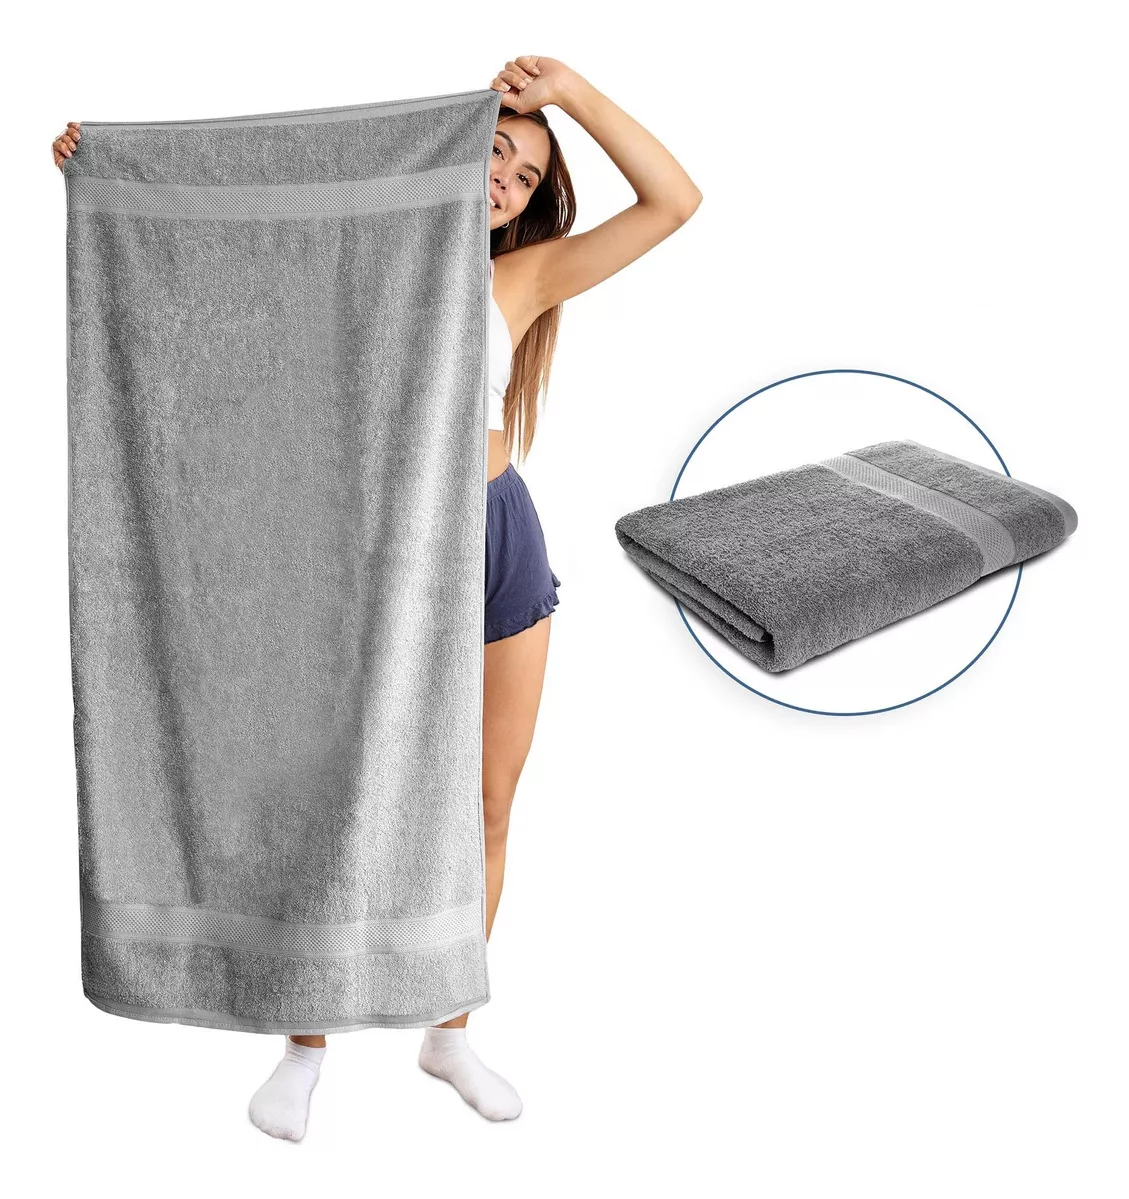 Segunda imagen para búsqueda de toallas cuerpo